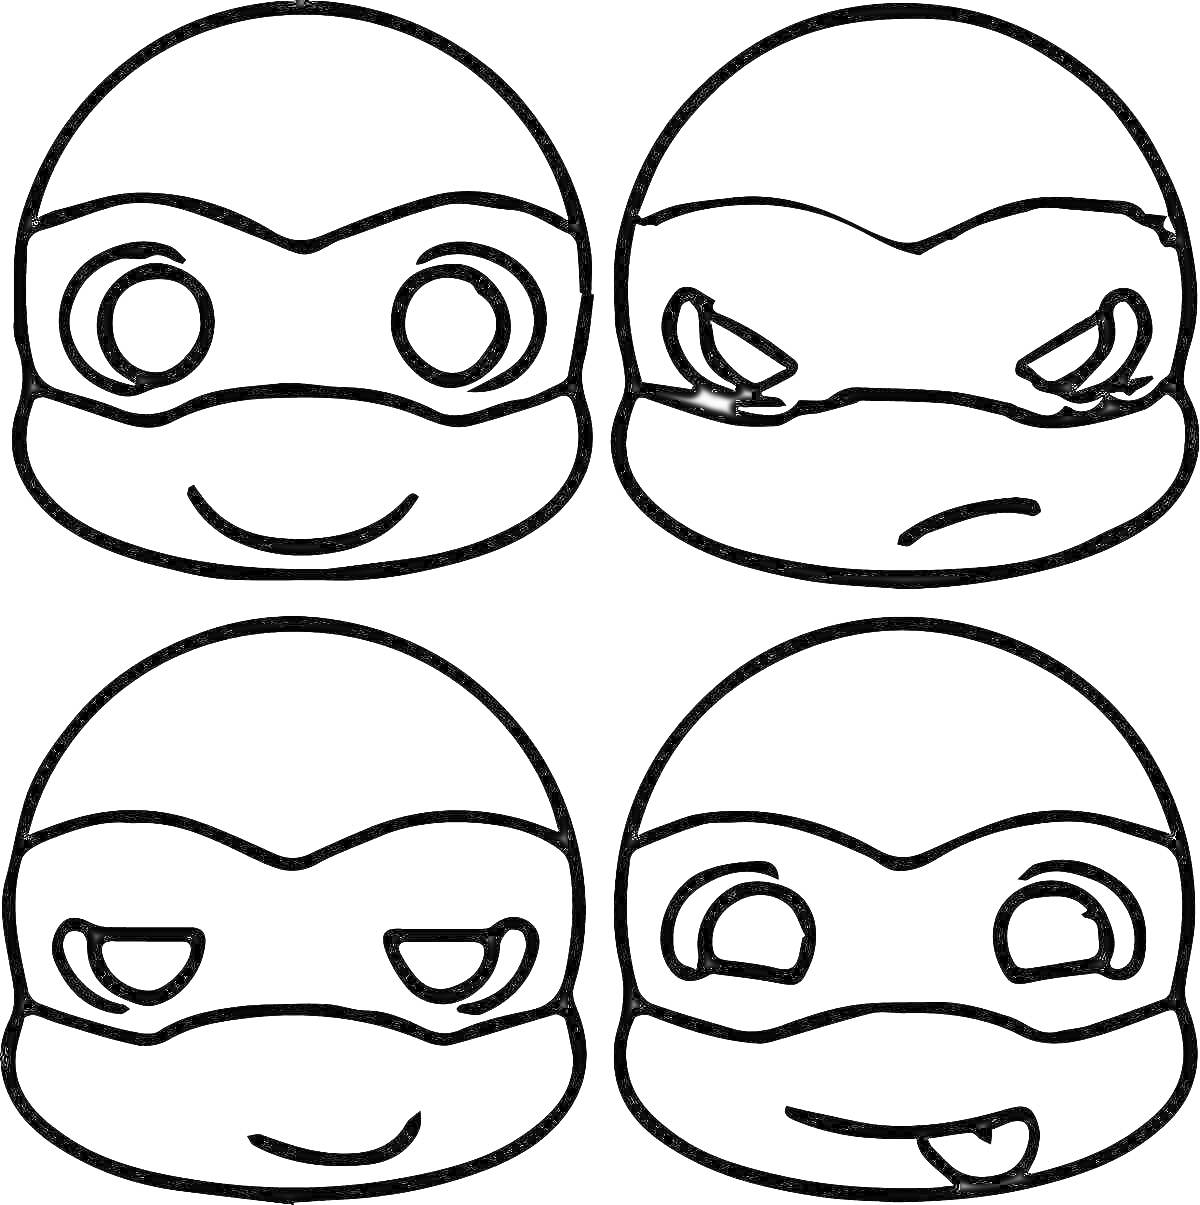 Лица черепах-ниндзя с разными выражениями